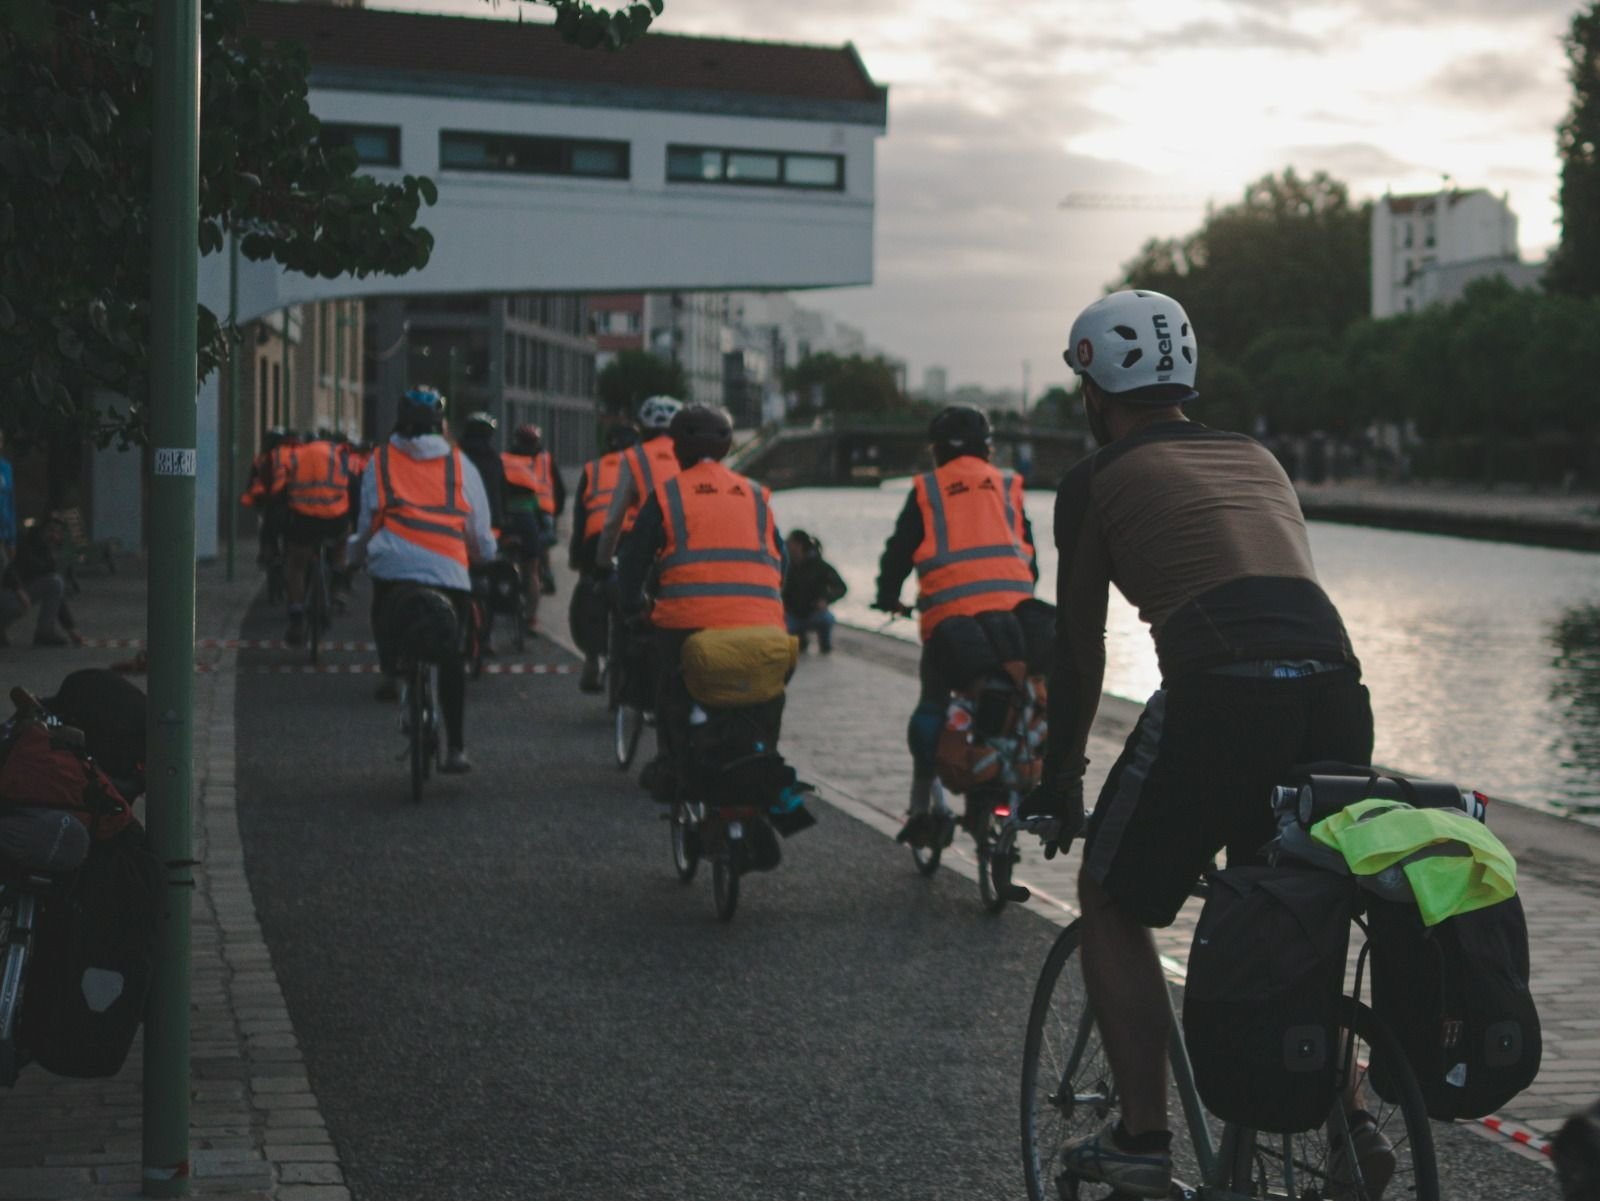 Illustration. Ce vendredi matin, près de 800 cyclistes longeront le canal de l'Ourcq dans le cadre de la Mad Jacques Vélo Picardie. Un périple de deux jours au cours desquels des dons seront collectés pour l'Institut Pasteur. @alivexandre